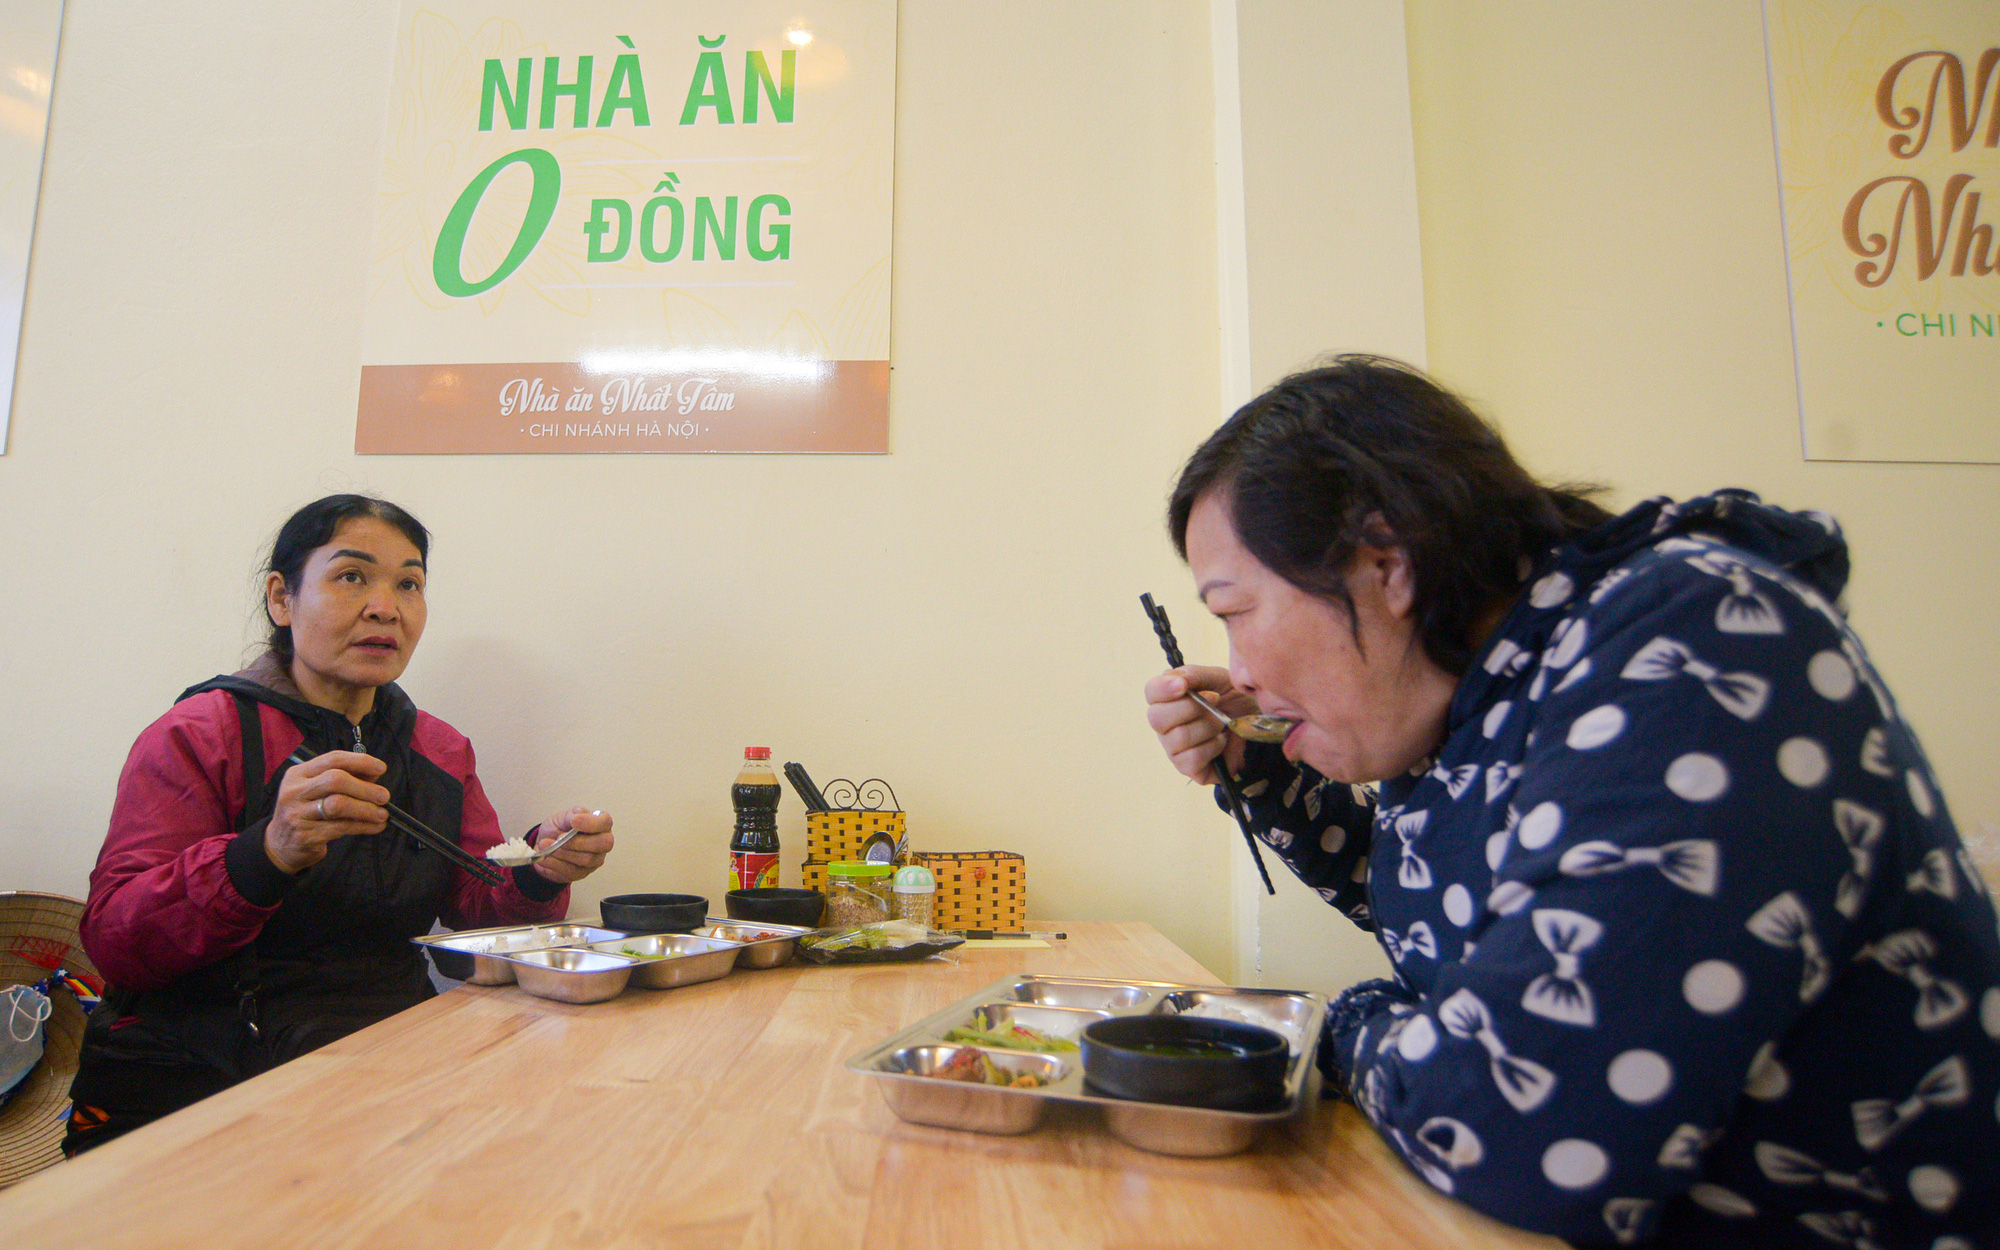 Quán ăn chay tại Hà Nội phục vụ 200 suất ăn mỗi ngày với giá 0 đồng 